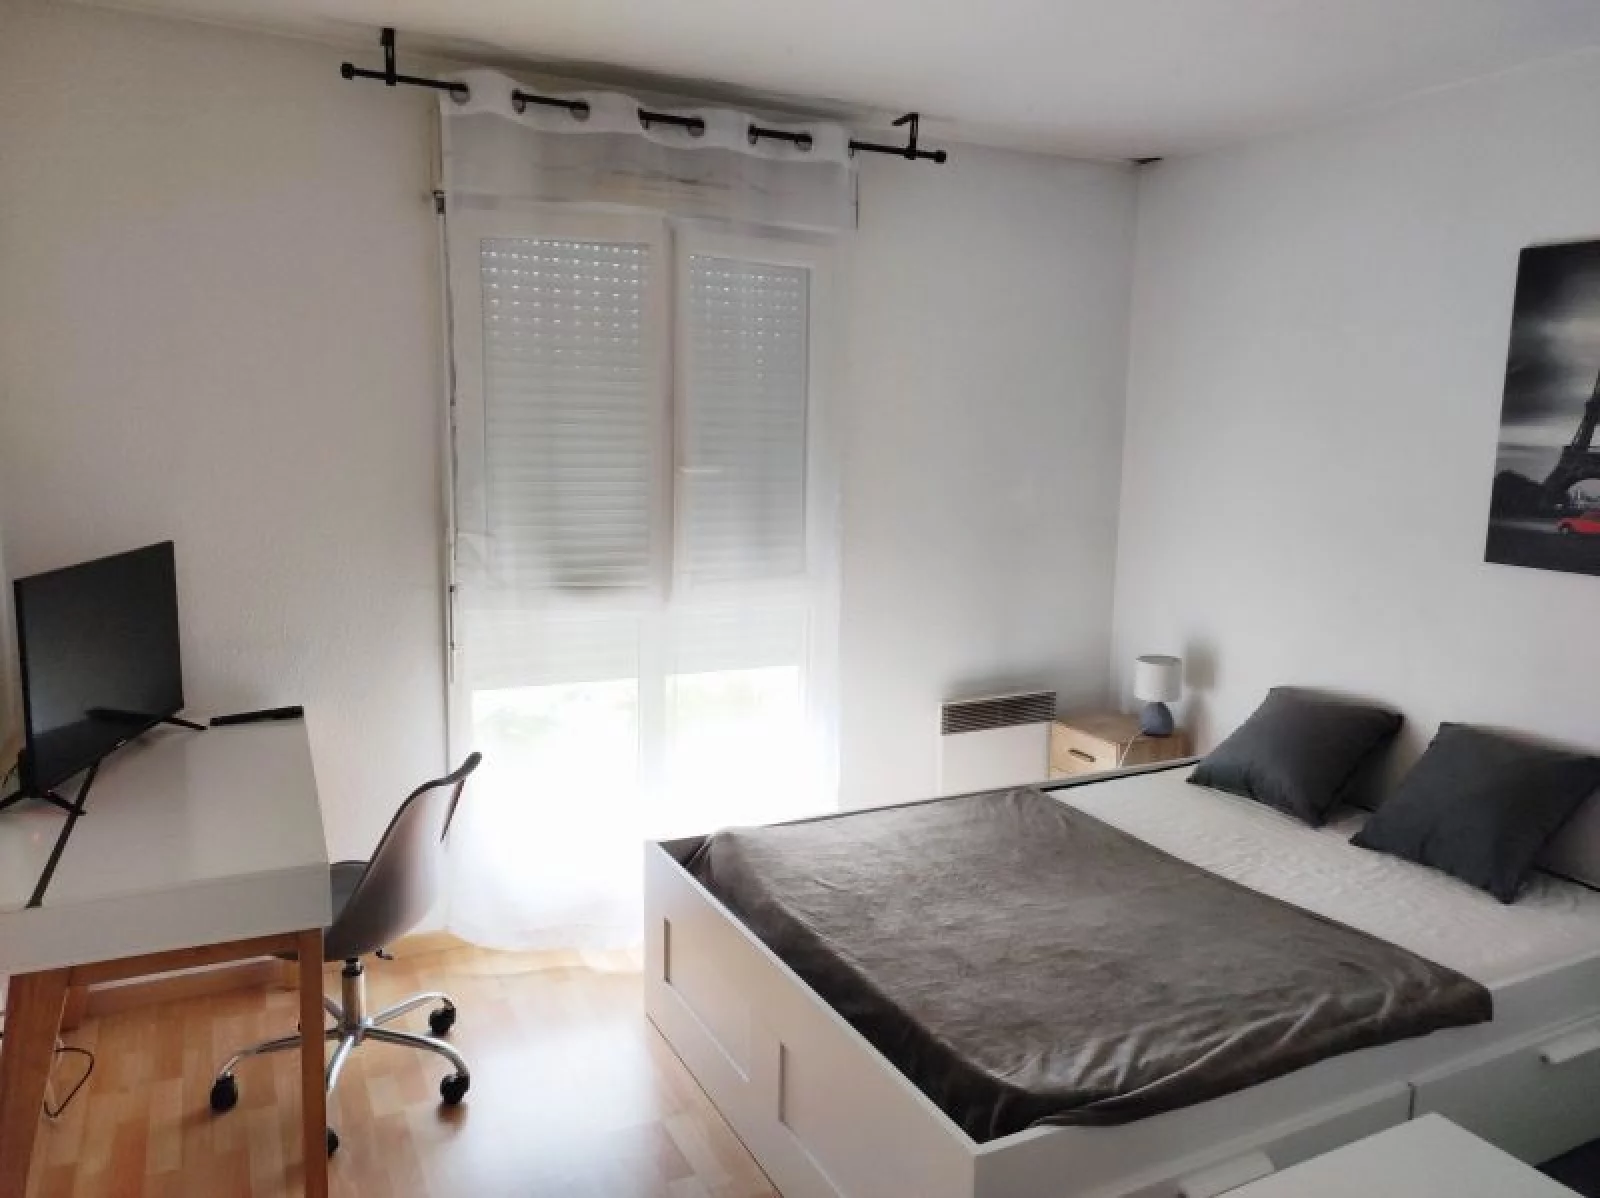 Location appartement meublé 1 pièce 21 m² (Paris-Est - Bry sur Marne)